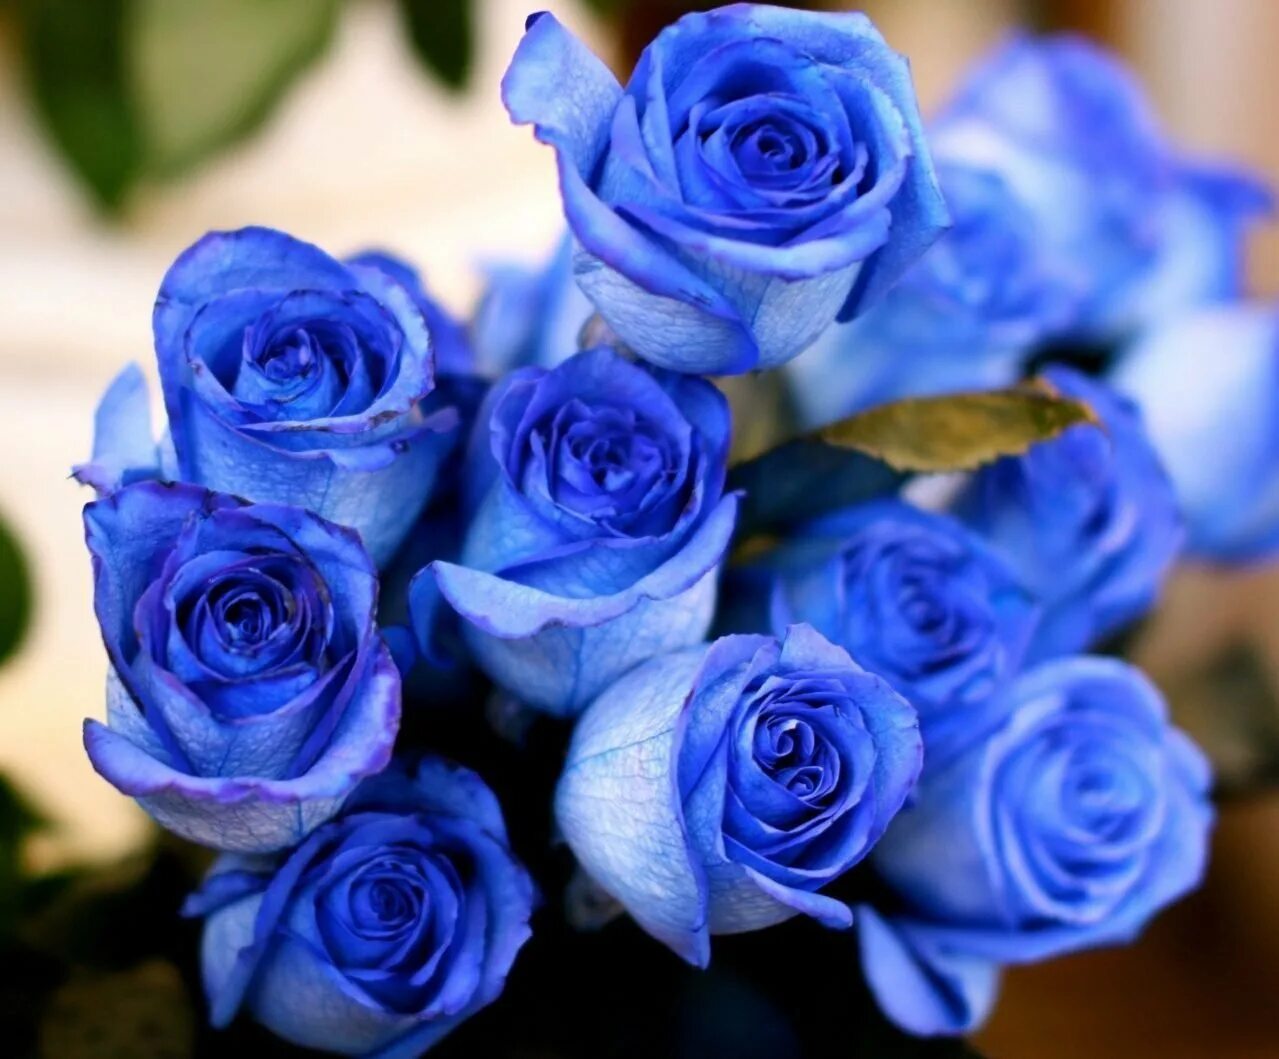 Синий раз. Синие кустовые розы. Голубые кустовые розы. Голубая Перинея роза. Цветы розы синие.